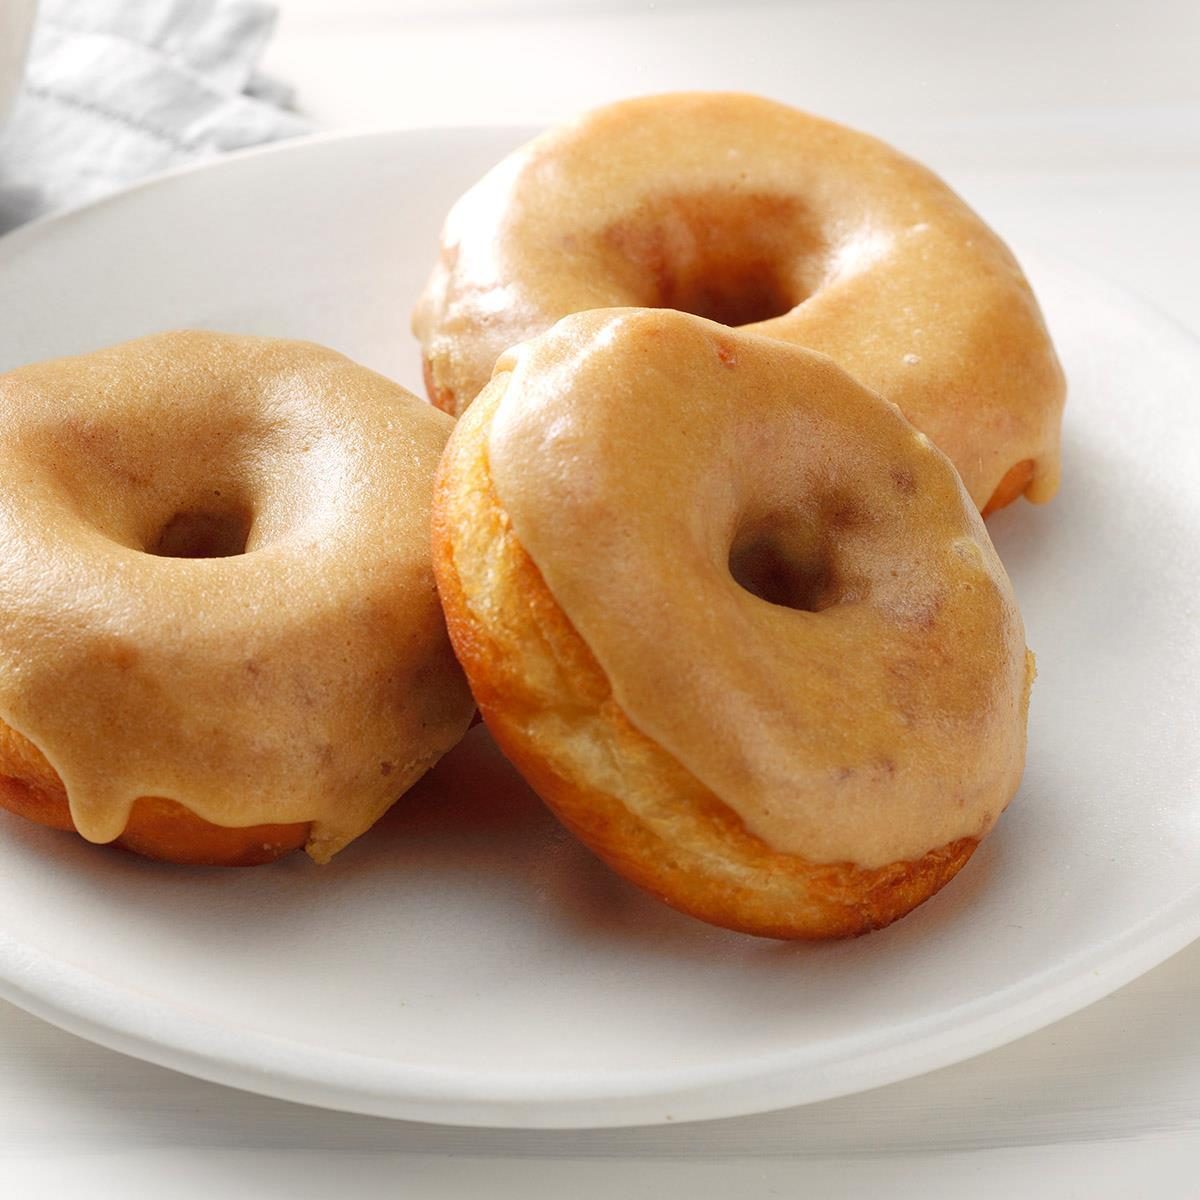 Ya Ake Donut - Babycakes Donut Maker Recipe Easy Mini Baked Donuts : A cikin wata tukunya mai zurfi, a saka manjan, sannan a yanka albasa ya ɗan fara soyuwa, sai ki zuba kayan miyanki, maggi, curry da tafarnuwa idan ya soyu, sai ki zuba ruwa ya ɗan tafasa.